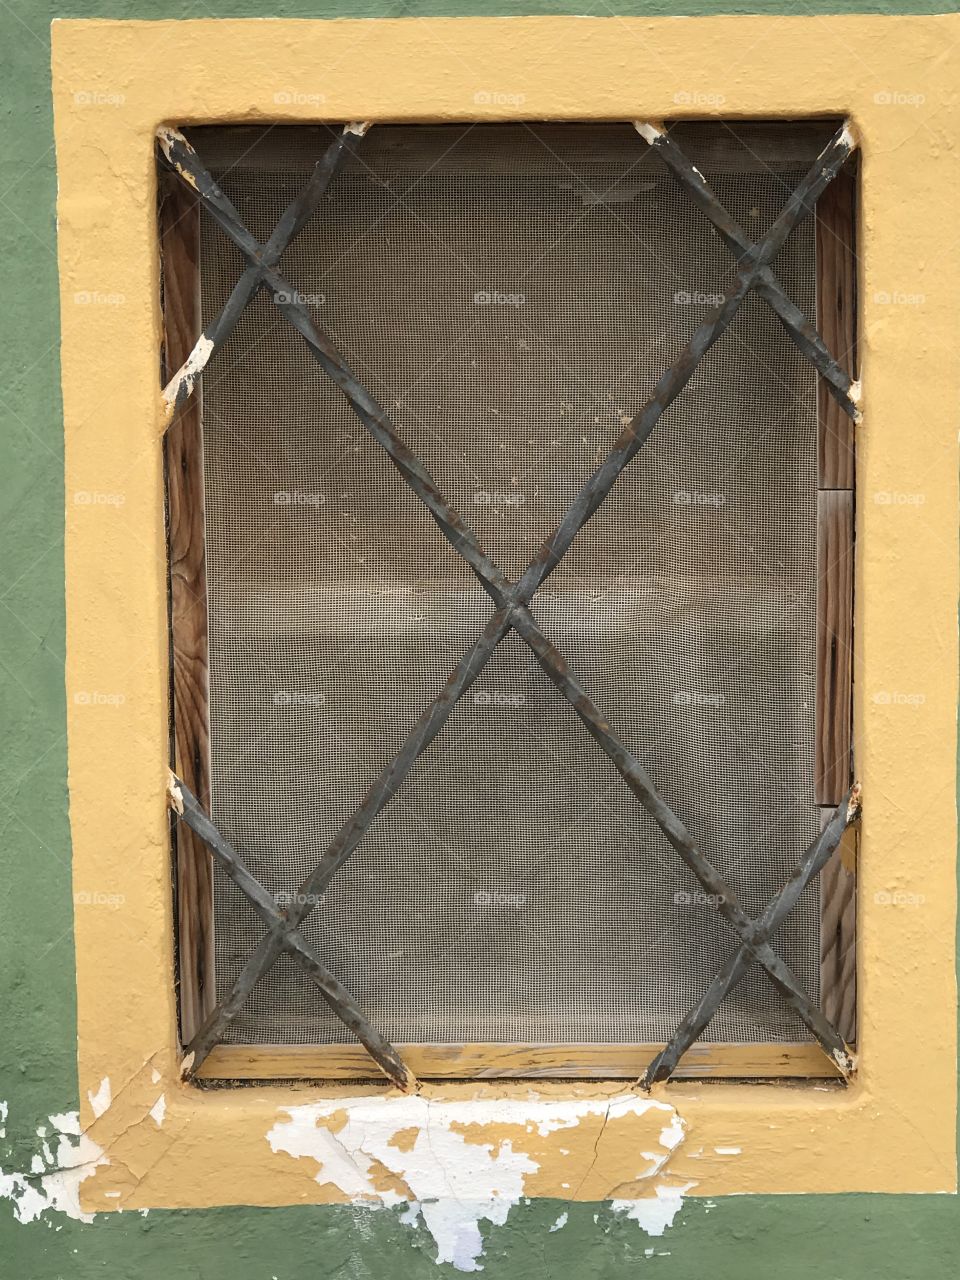 Window behind bars